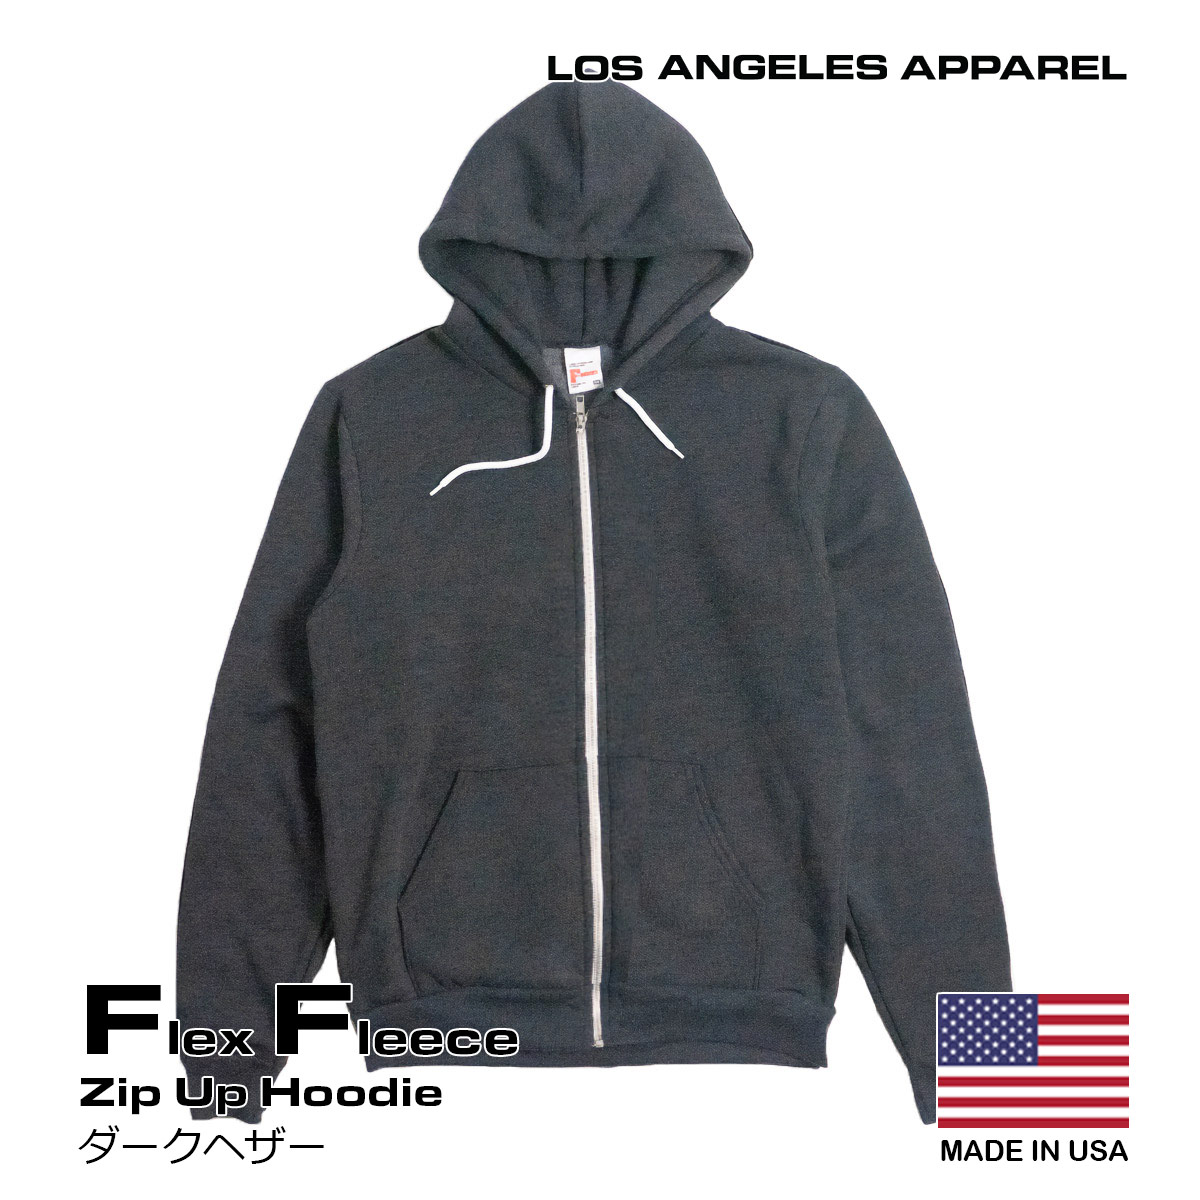 ロサンゼルスアパレル LOSANGELES APPAREL F97 フレックスフリース ジップアップ...